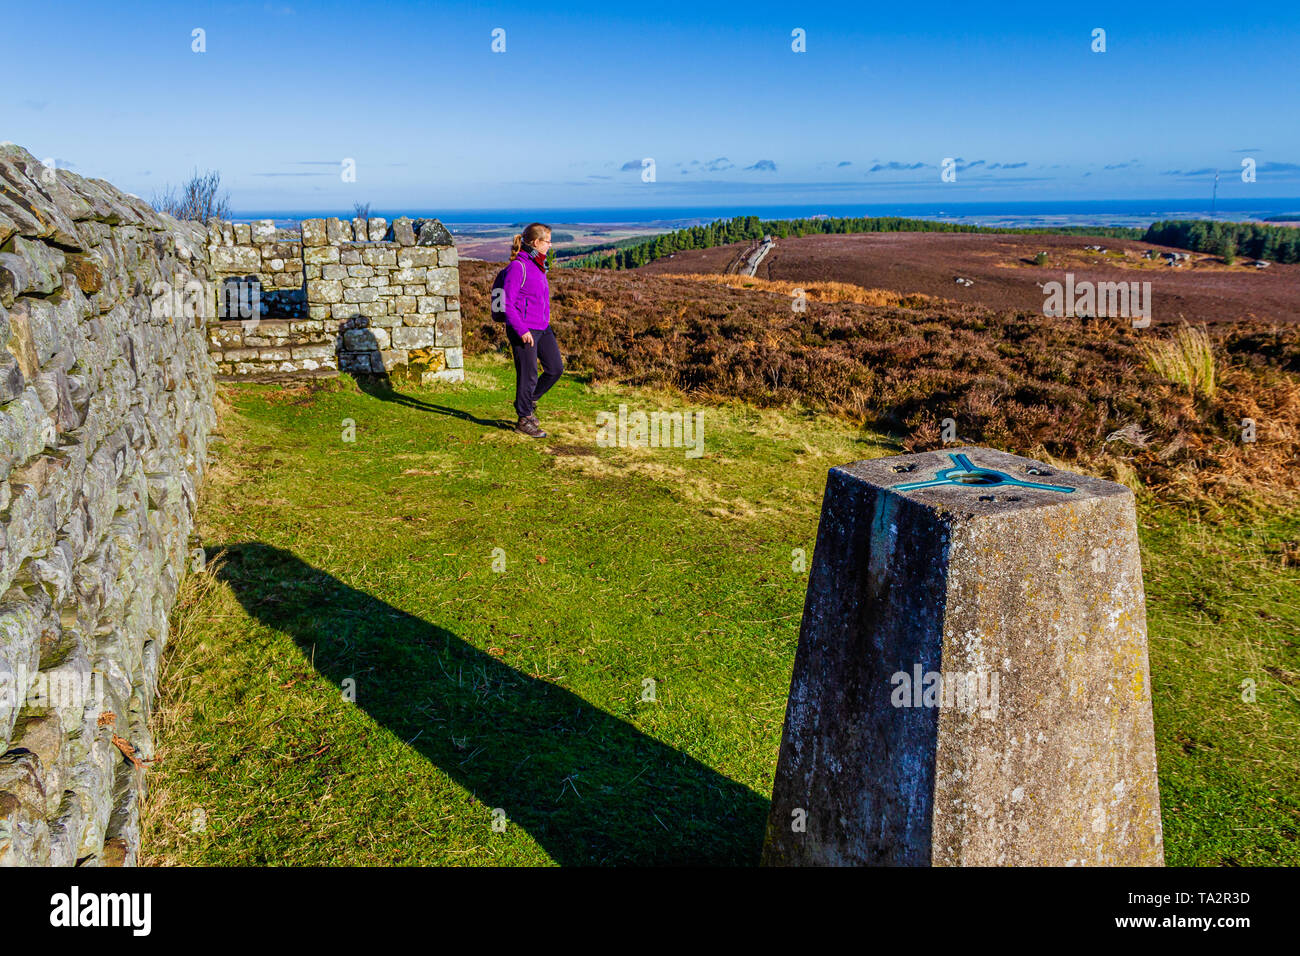 Le secoueur trig point sur le sommet de la colline, le site Ros ros d'âge de fer de château fort. Près de Chillingham, Northumberland, Angleterre. Novembre 2018. Banque D'Images